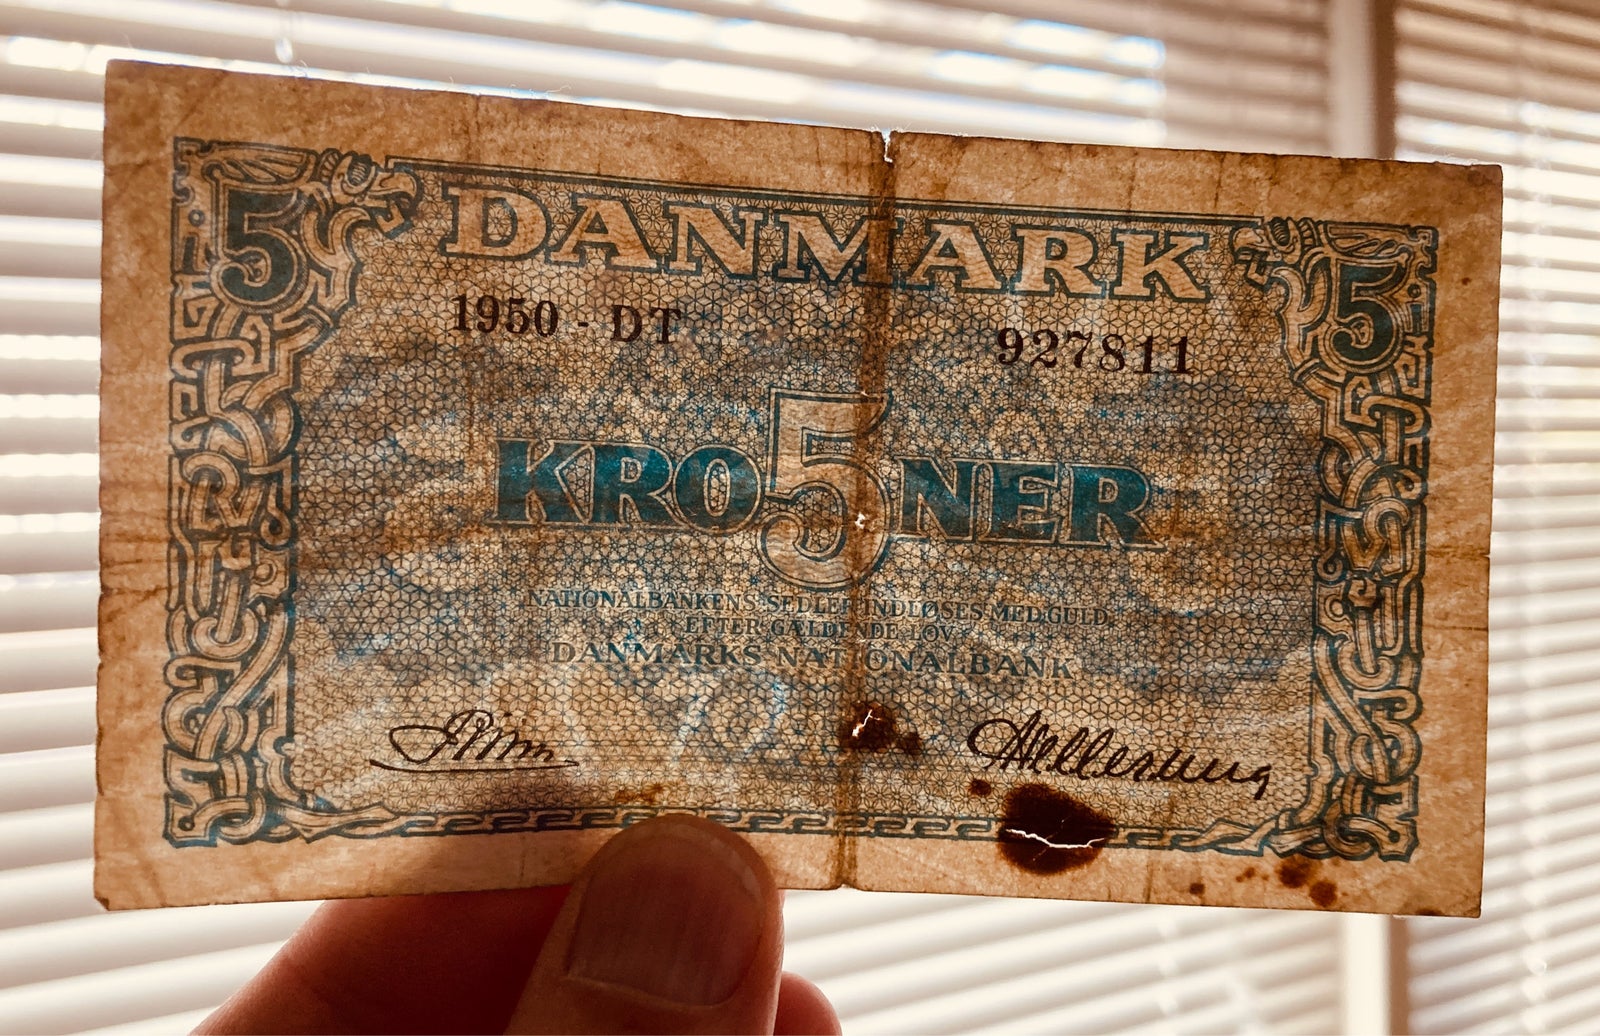 Danmark, sedler, 5 kr